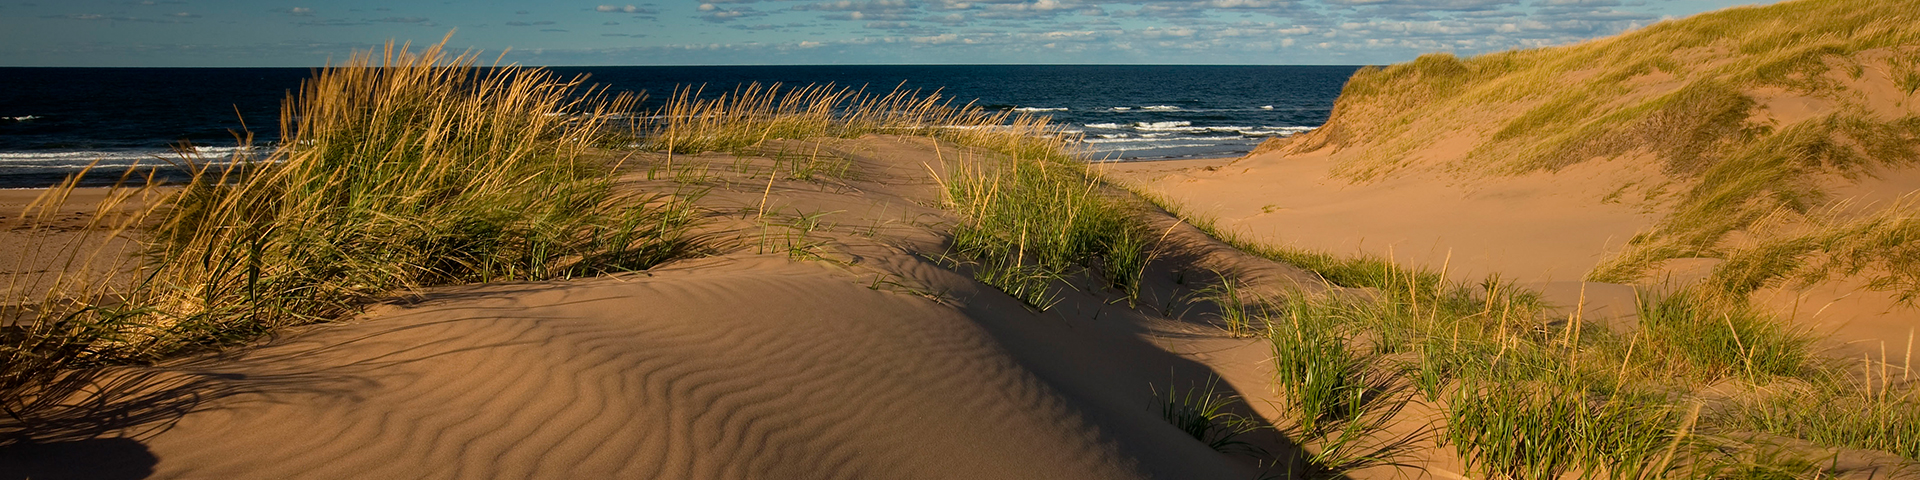 sand dunes along the beach